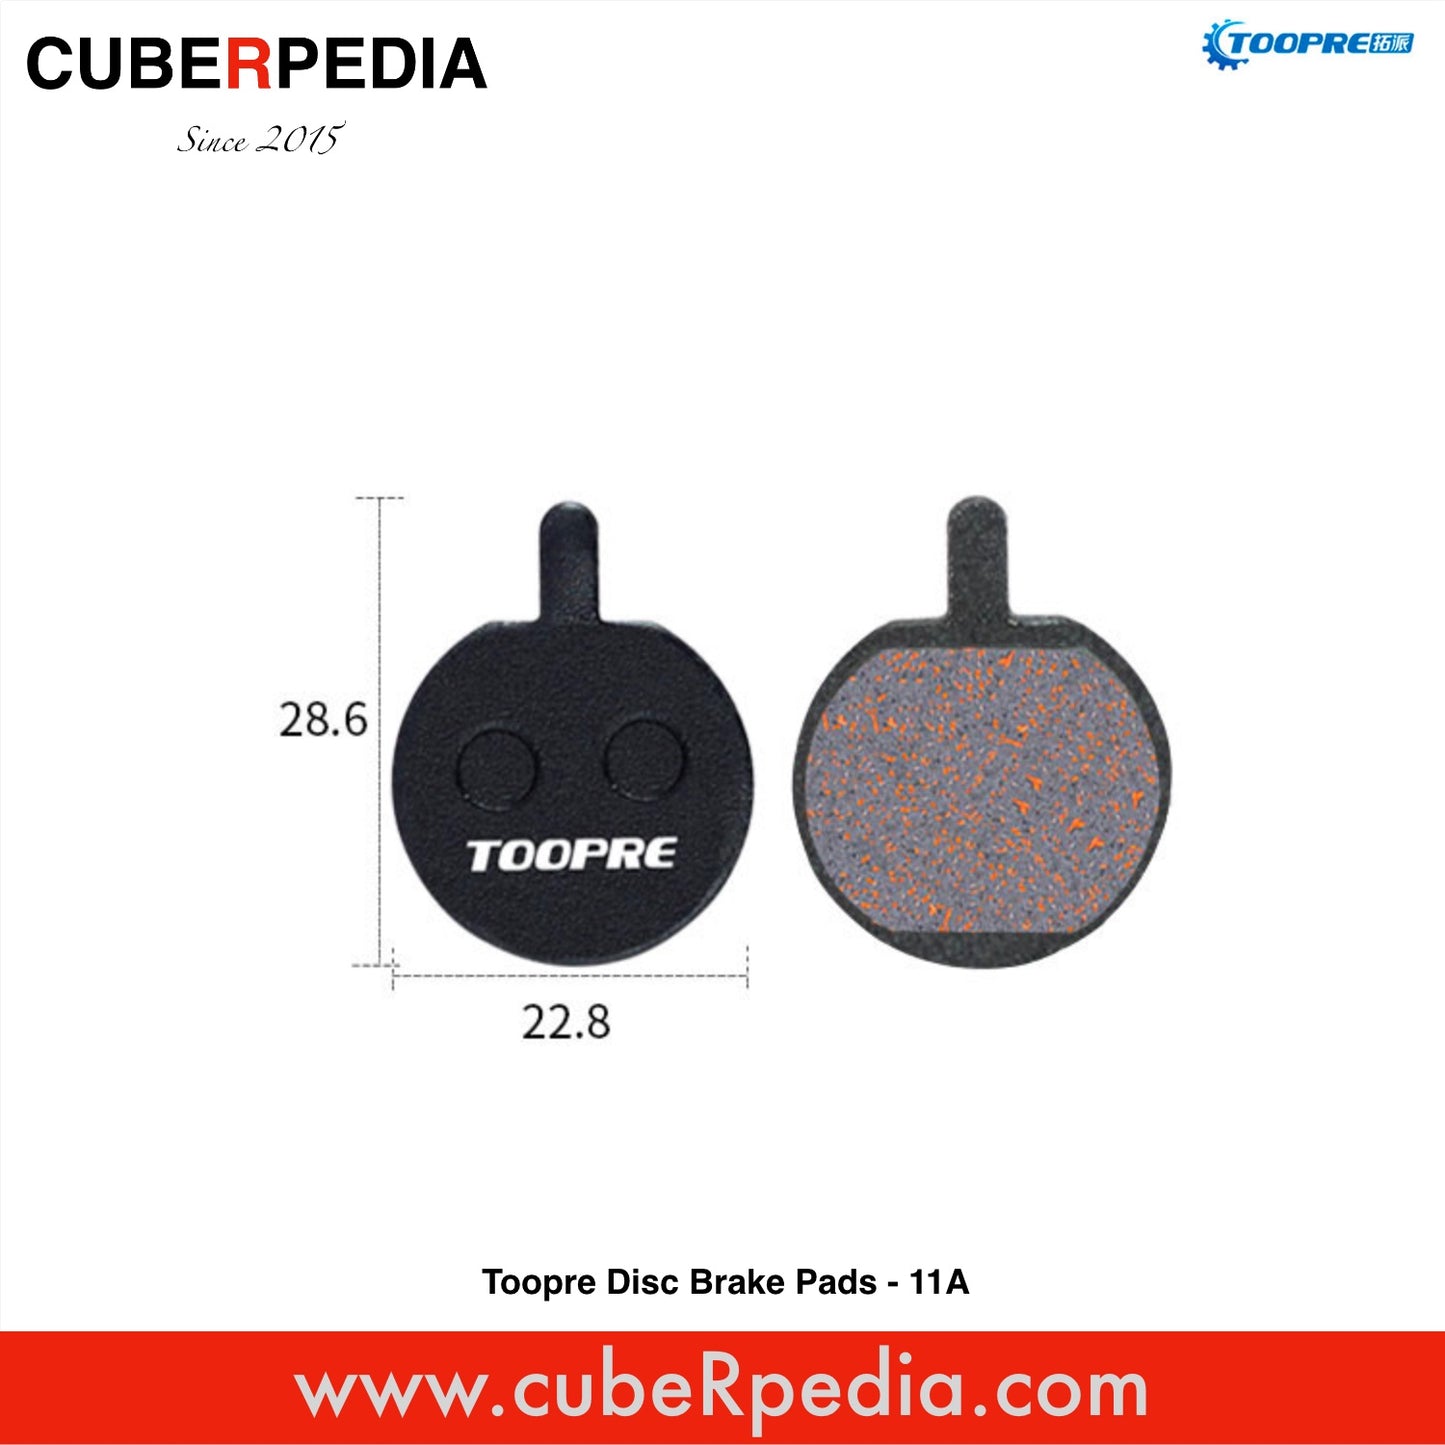 Toopre Disc Brake Pads - 011A